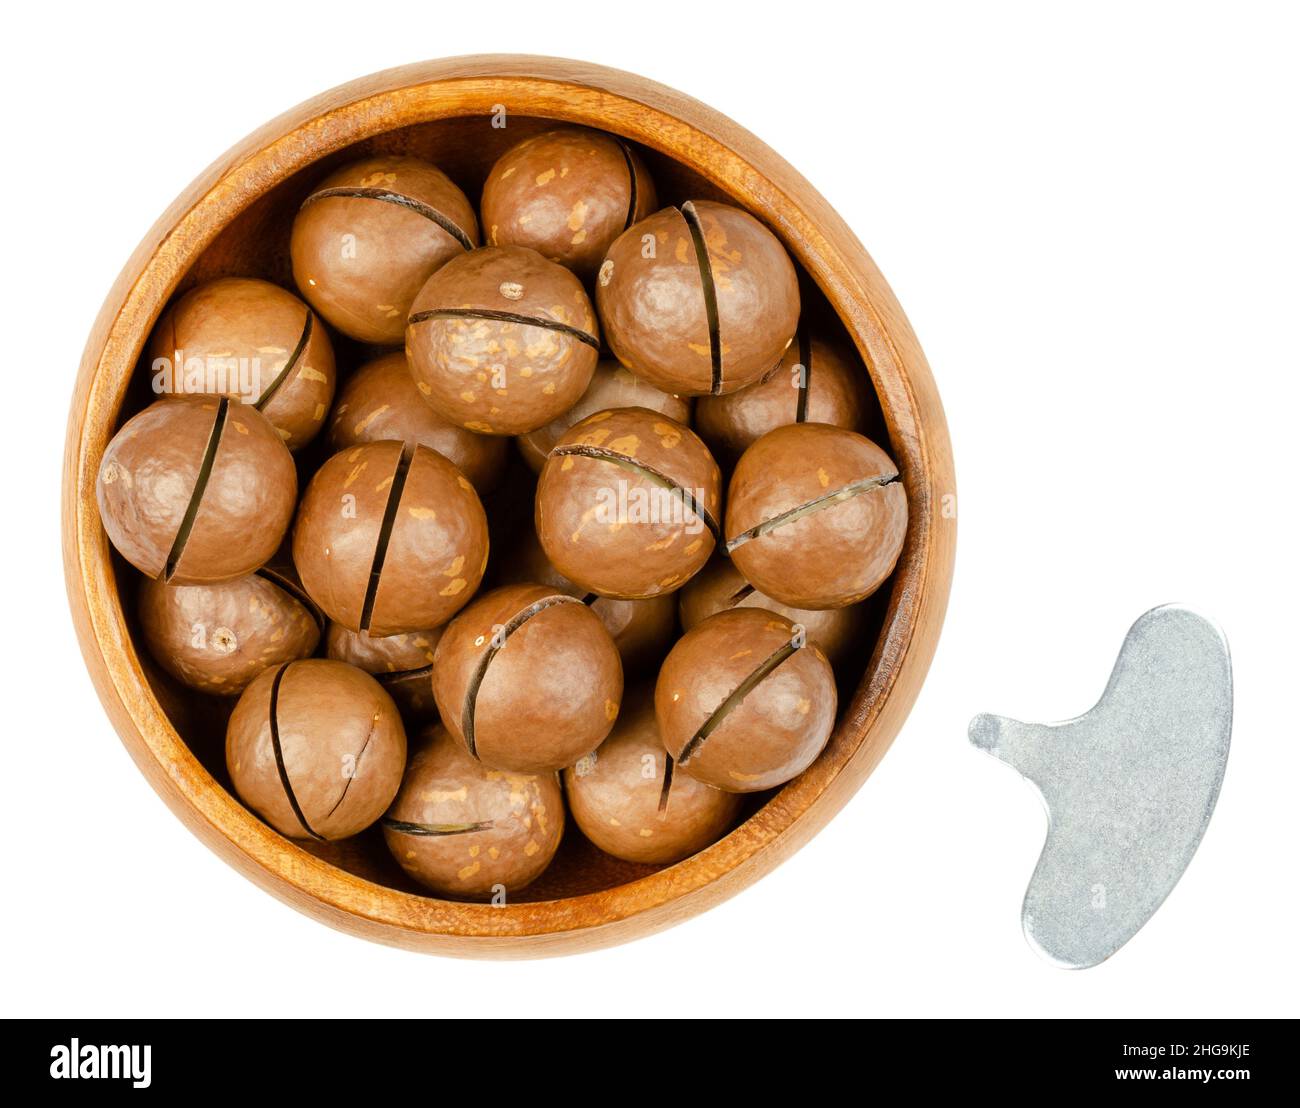 Noix de macadamia avec noix sciées dans un bol en bois, et avec clé ouvreur.Groupe de noix séchées, non décortiquées, connues sous le nom de Queensland, noix de Bush et noix de maroochi. Banque D'Images